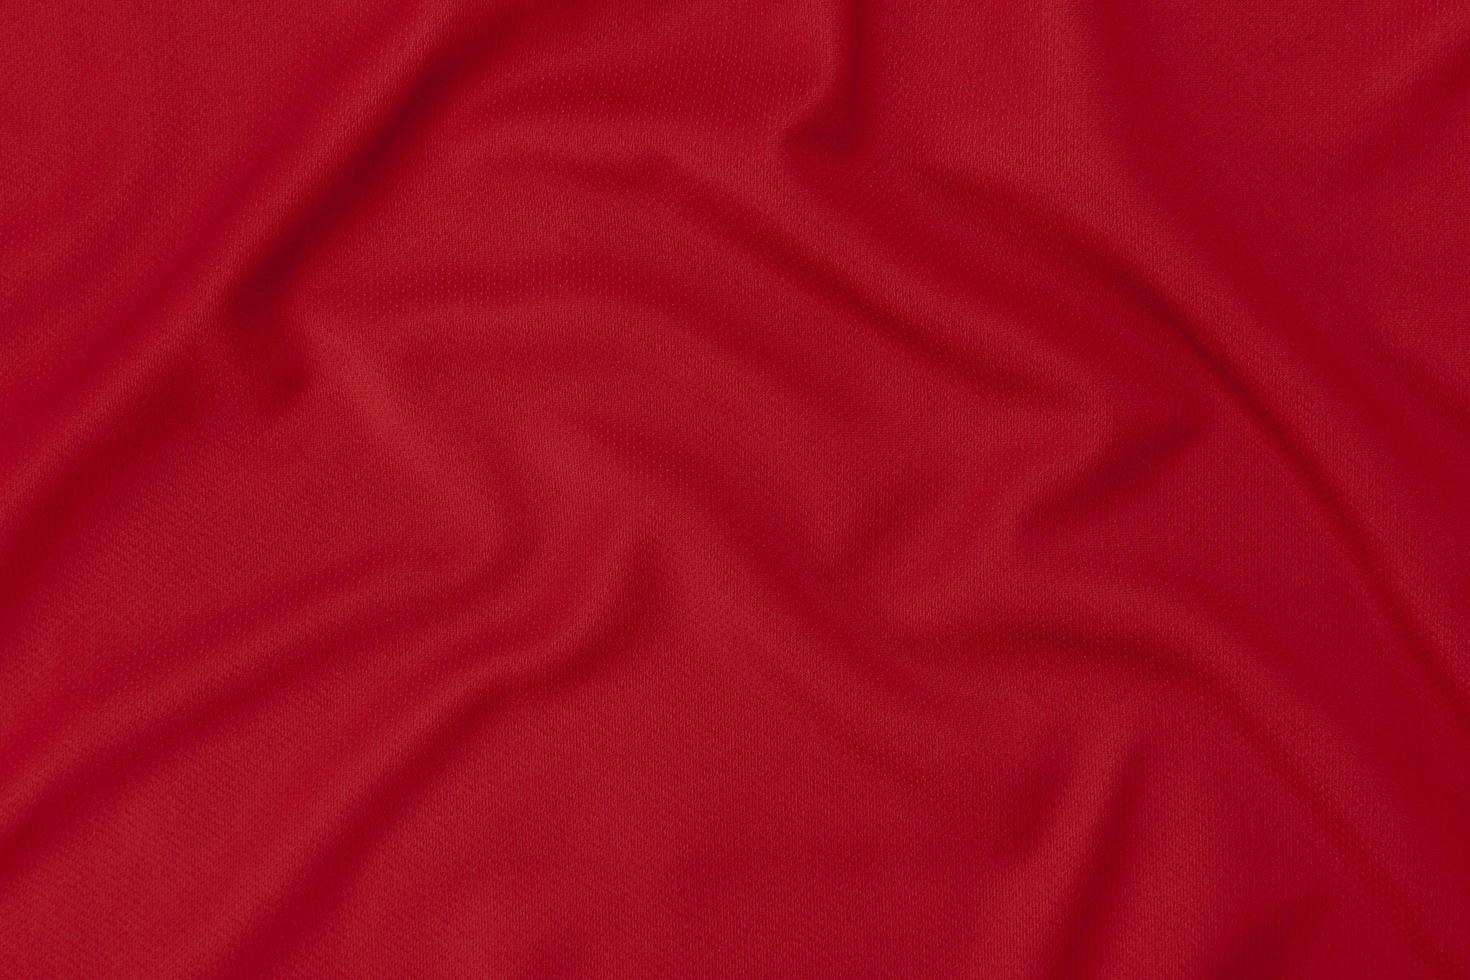 Textura de tela roja. Fondo rojo. Fondo de tela. Fondo y textura de tela  roja. Fondo y textura para diseñadores. Red abstract background and texture  for designers Stock Photo